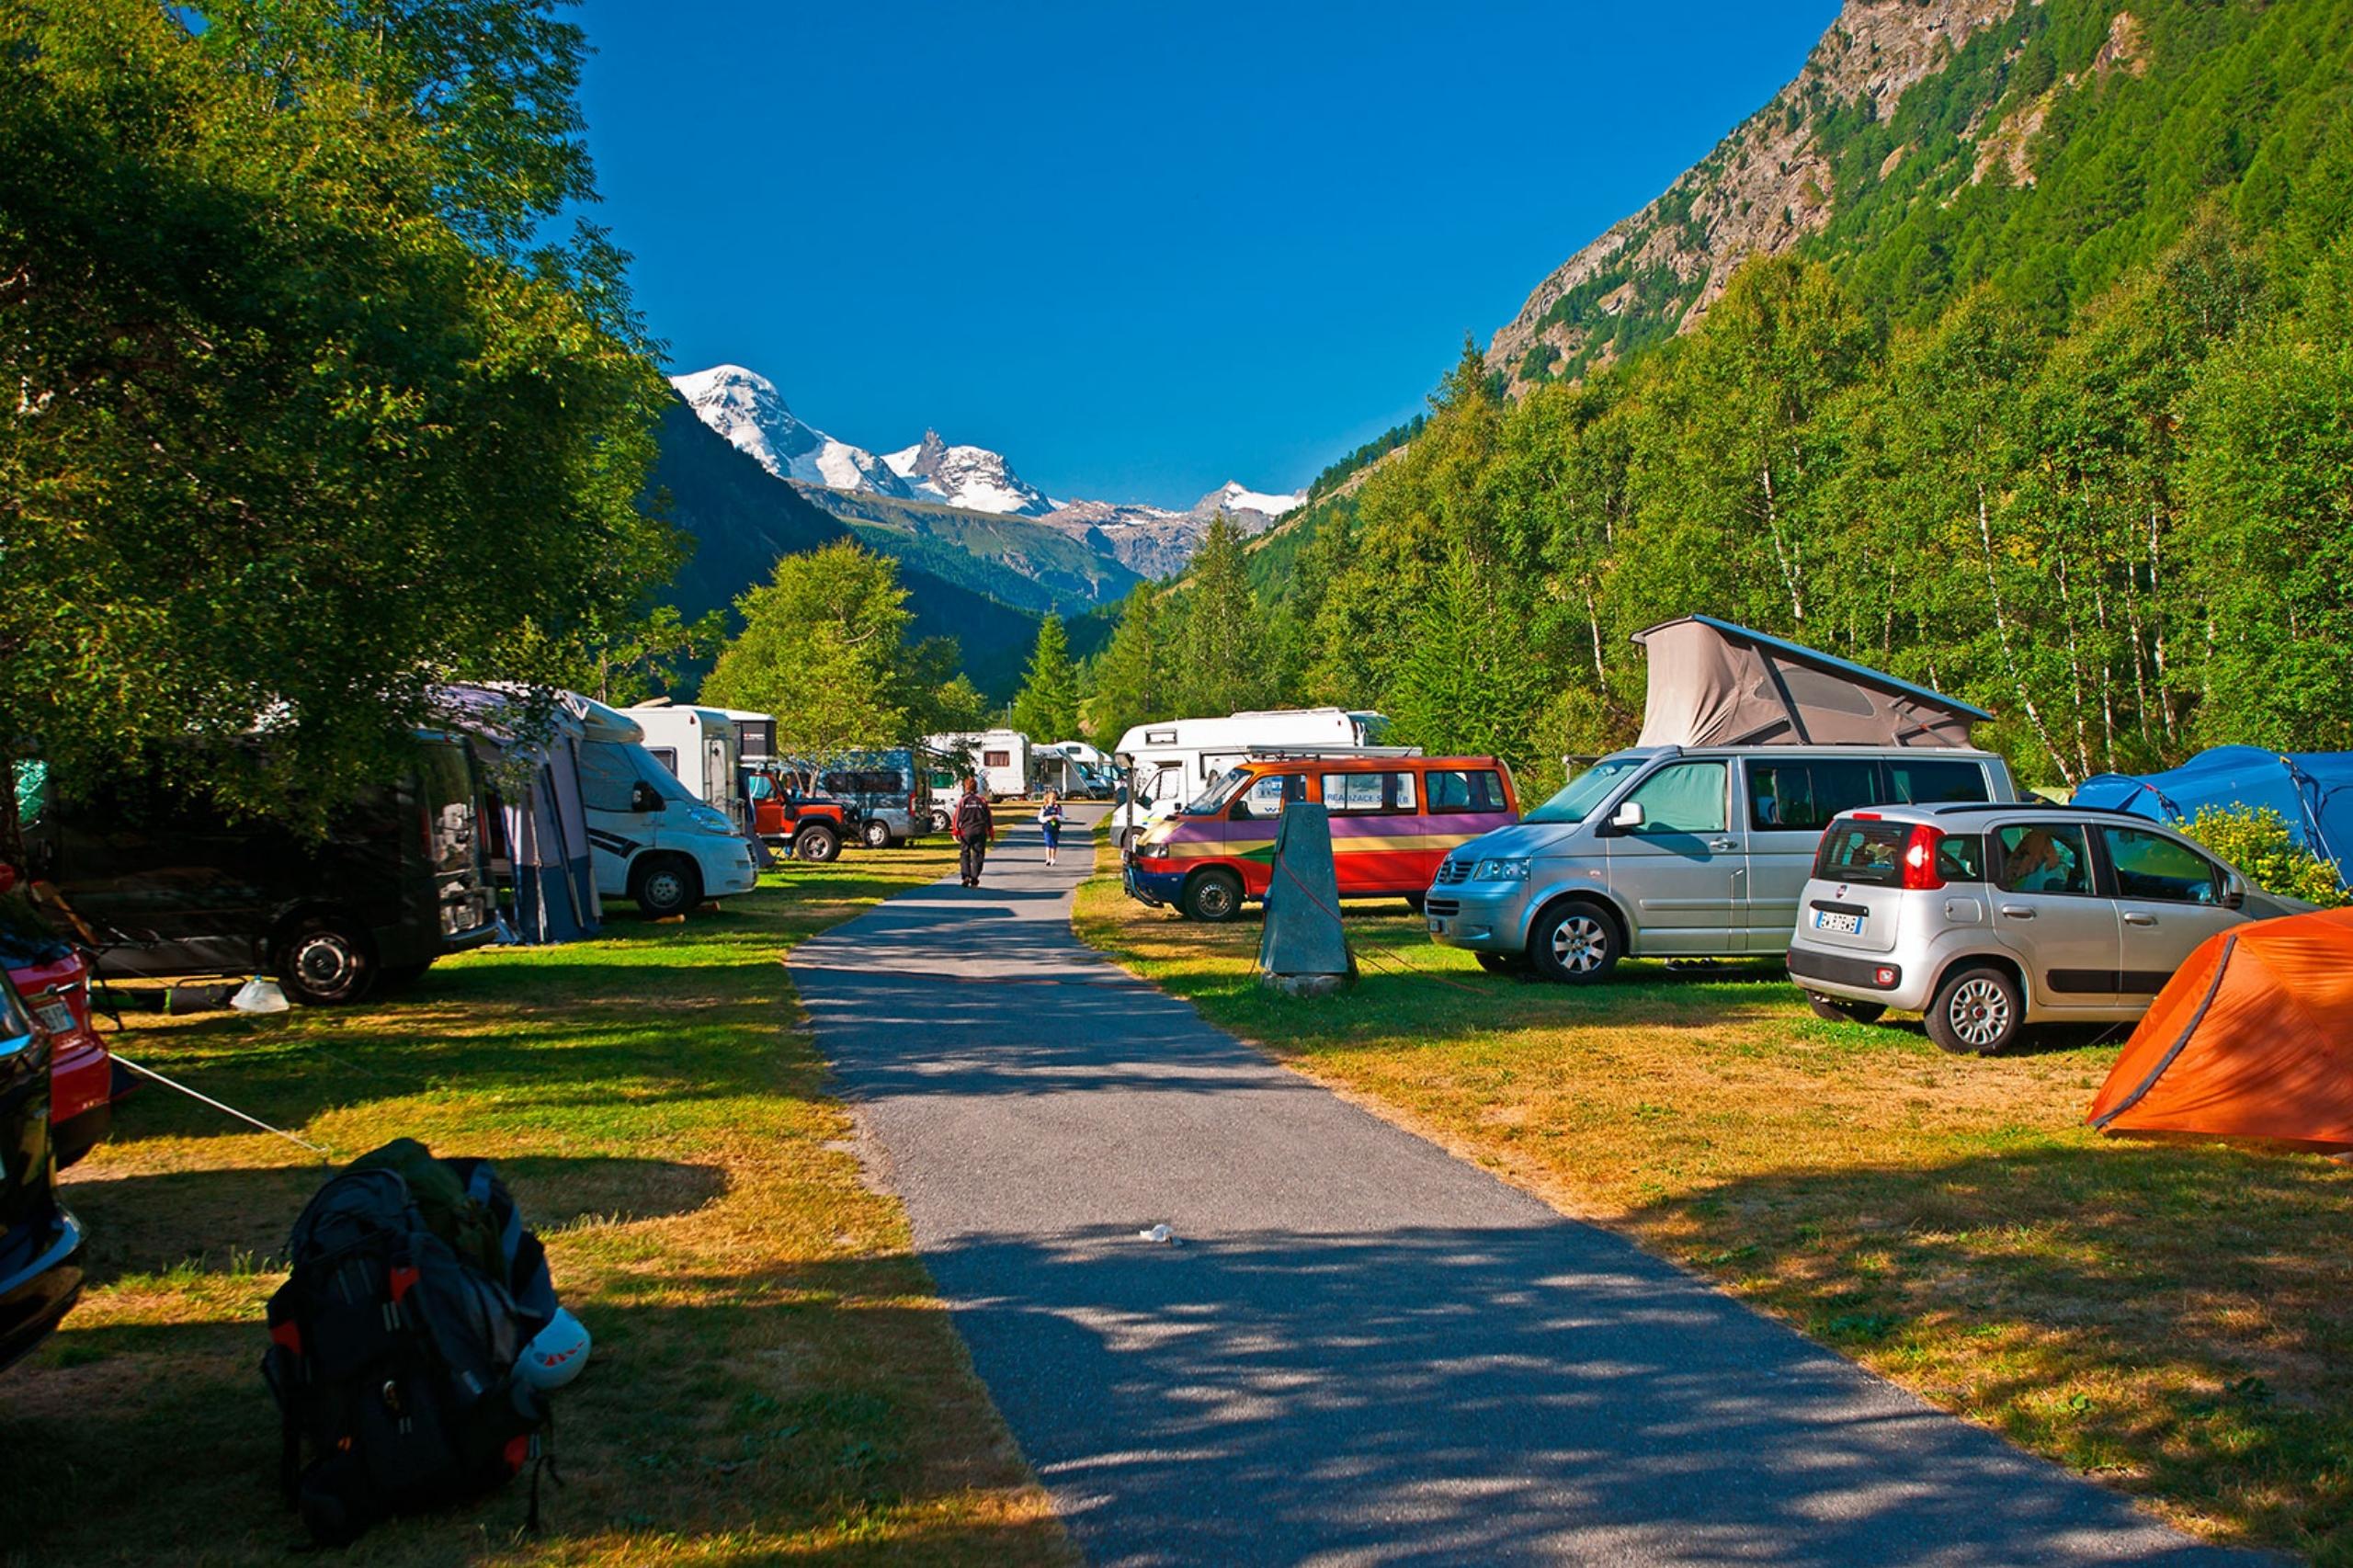 Le camping de Täsch compte une centaine d'emplacements, mais tu ne peux pas réserver. 